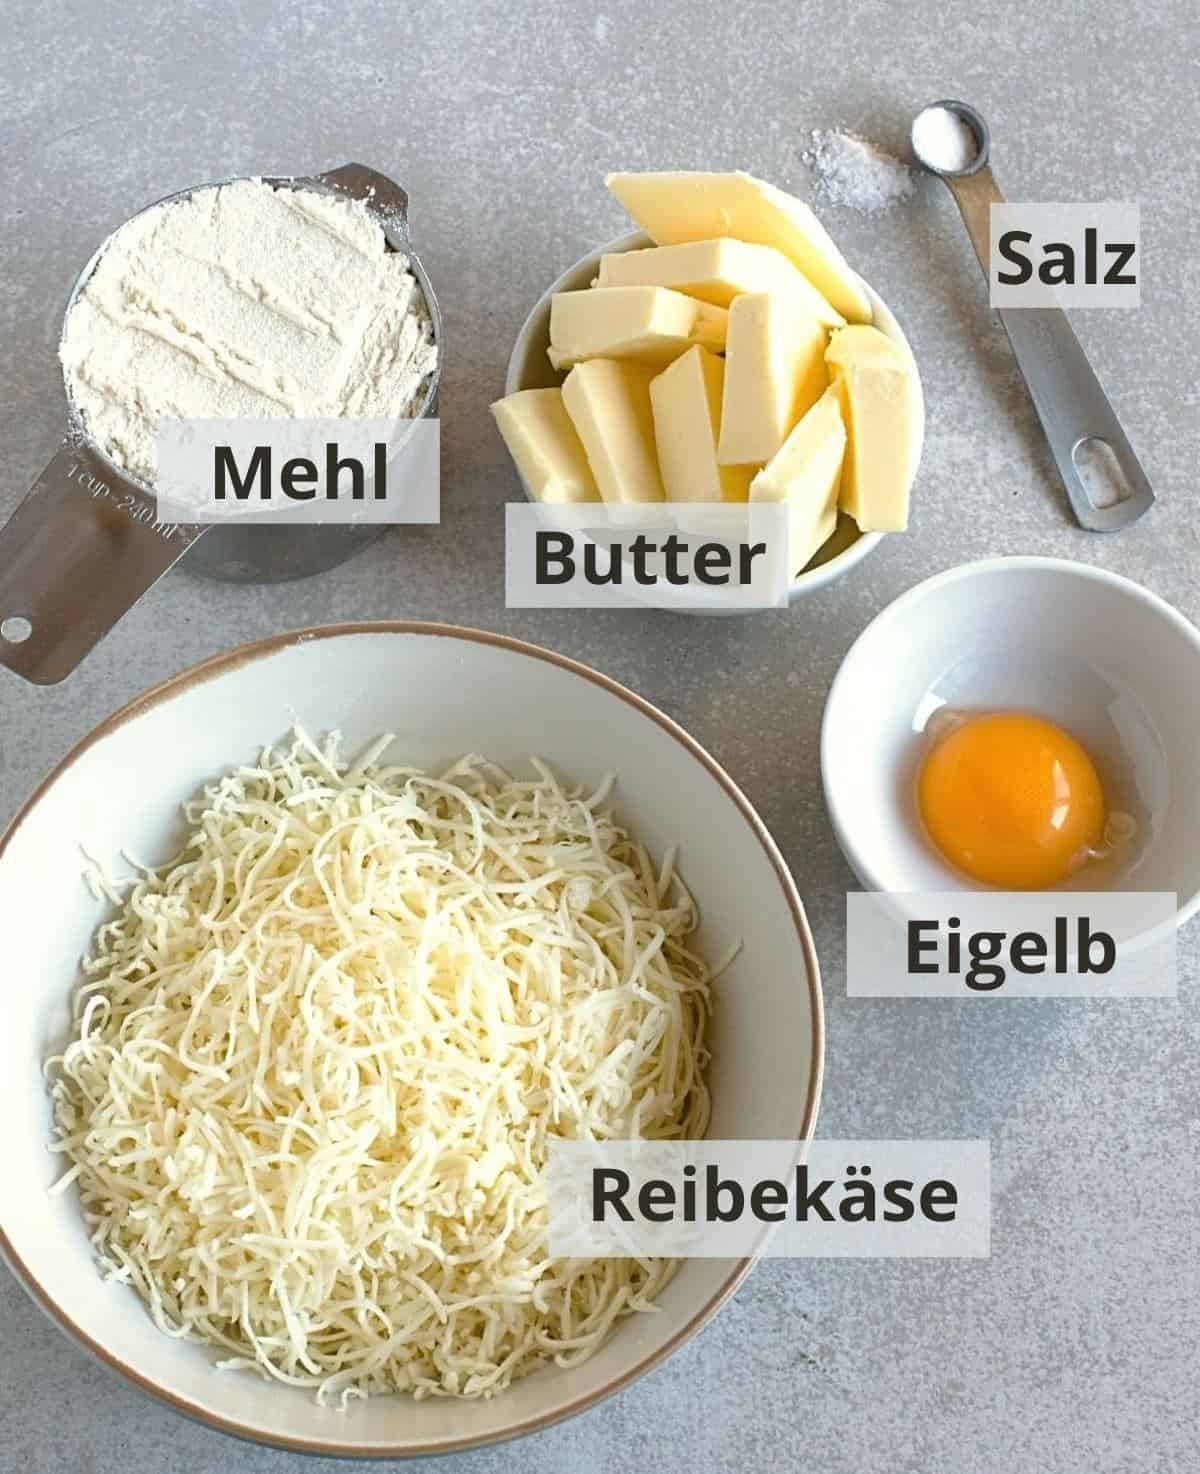 Zutaten für Käseplätzchen mit Beschreibung.